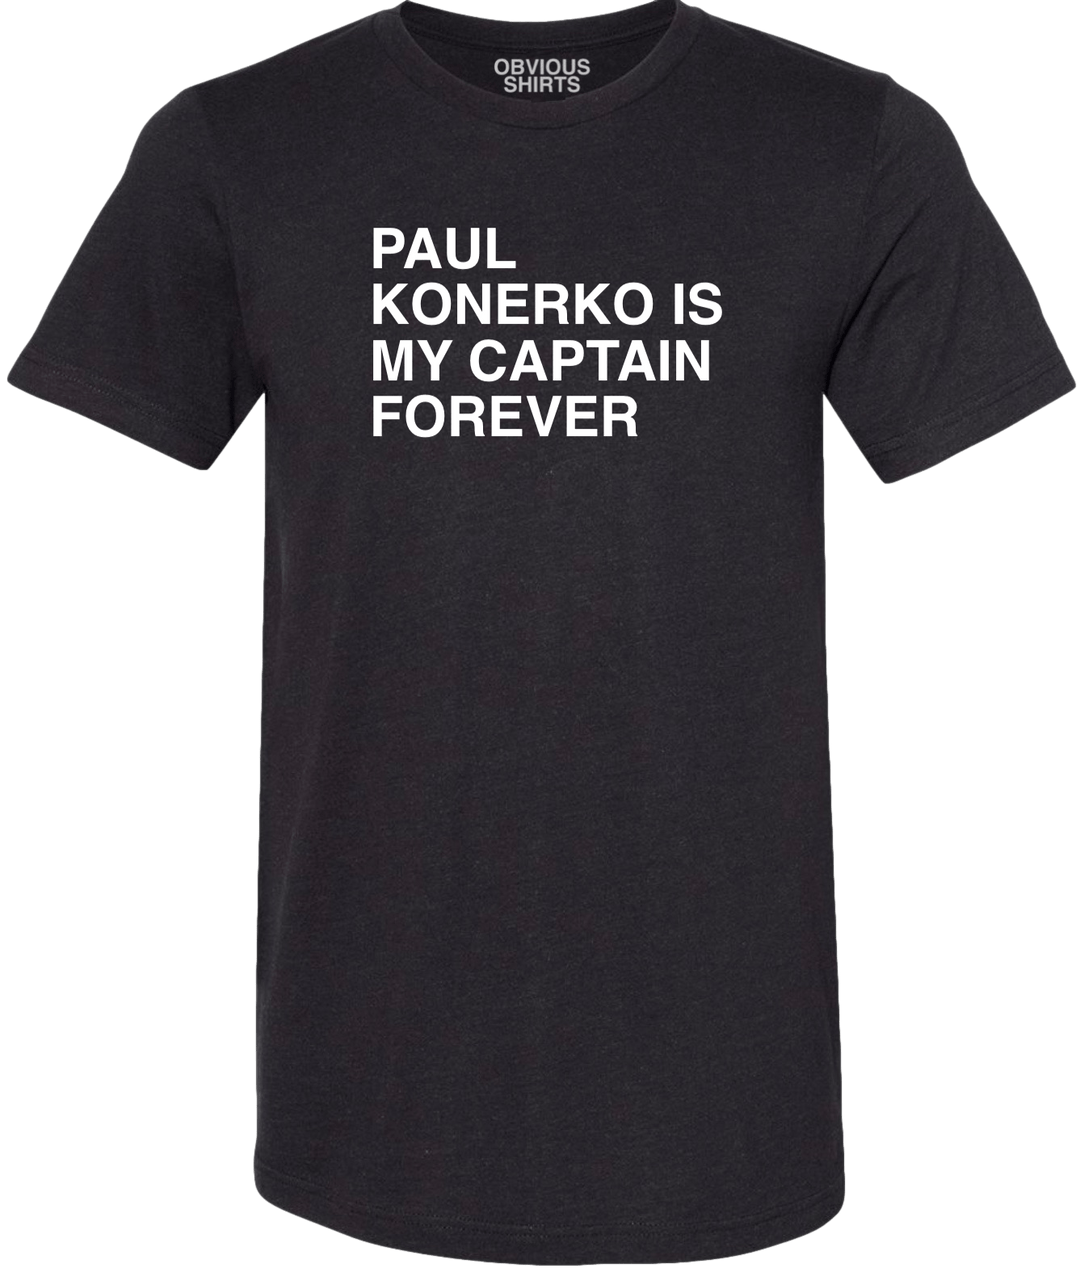 PAUL KONERKO IS MY CAPTAIN FOREVER.